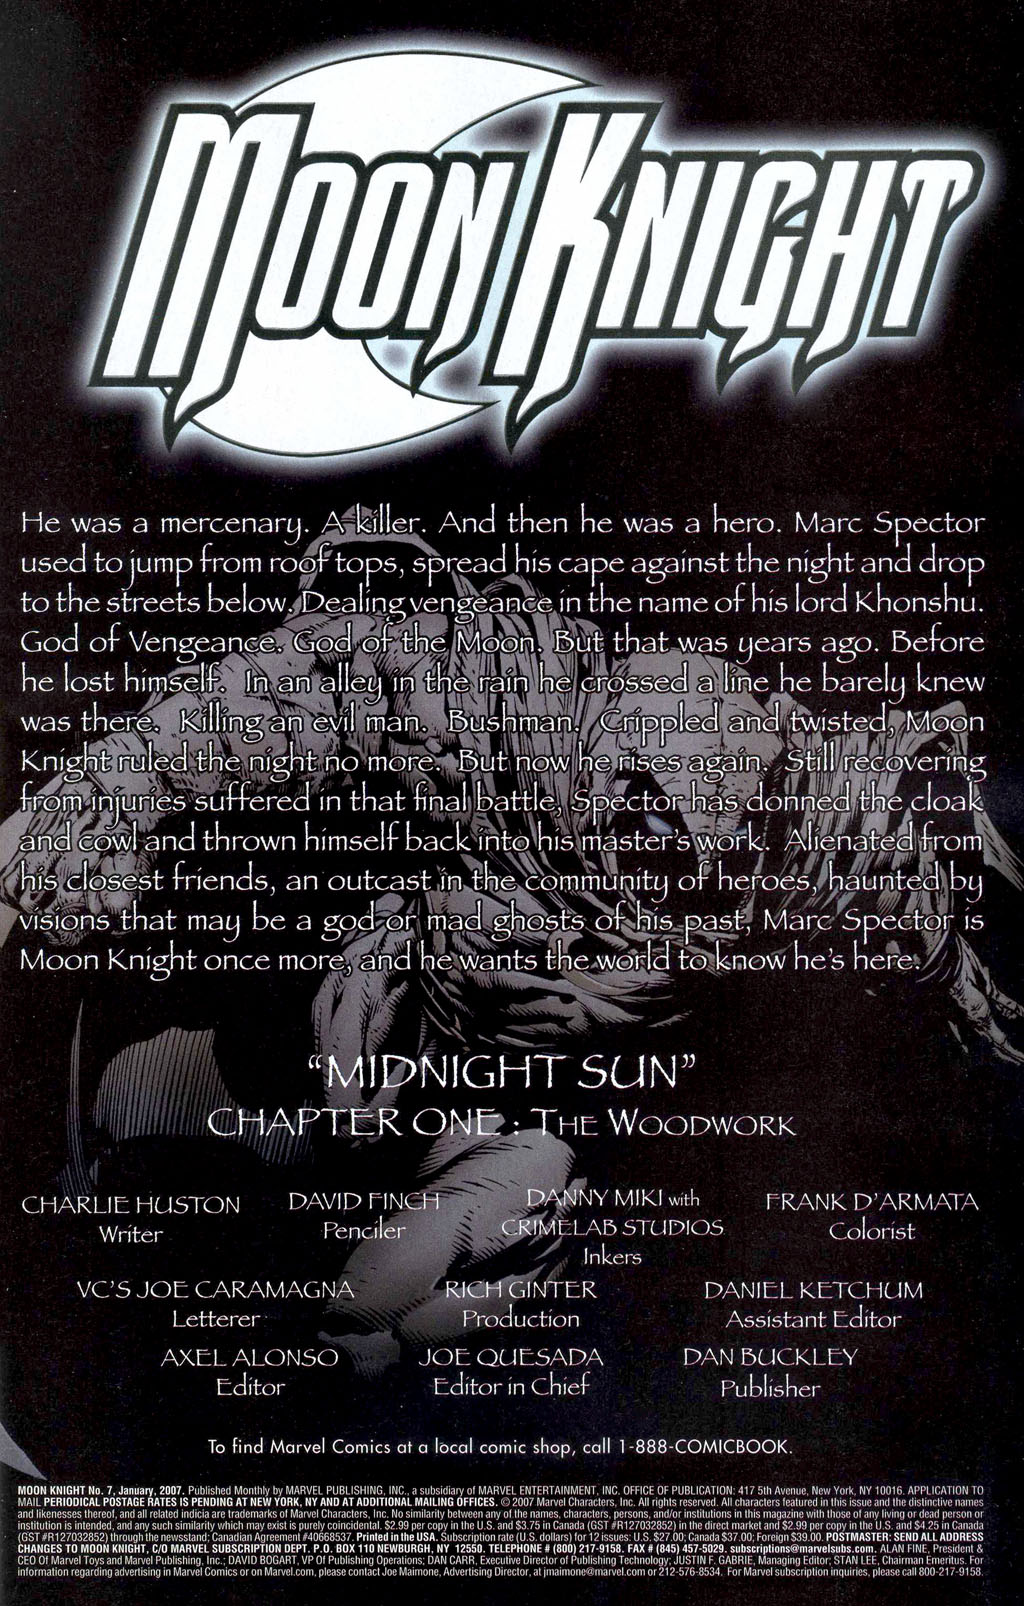 Moon Knight #7 - Midnight Sun Chapter 1: The Woodwork